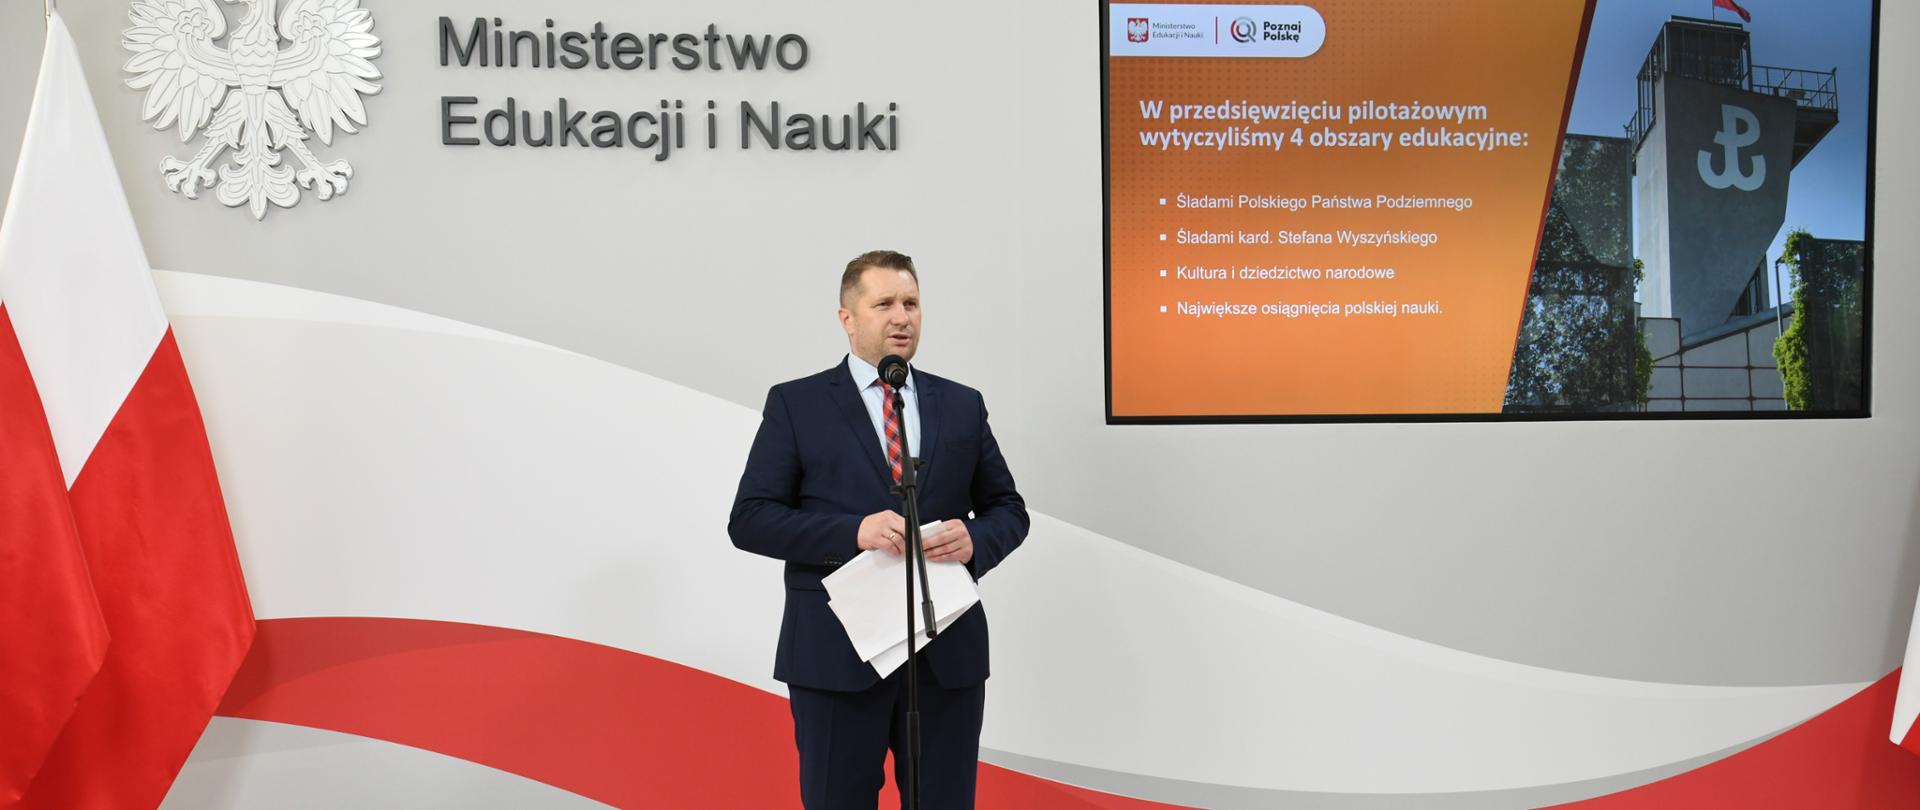 Minister Przemysław Czarnek stoi przy mikrofonie. W ręku trzyma dokumenty. W tle z lewej strony ekran ze zdjęciem muzeum powstania warszawskiego oraz napisem 